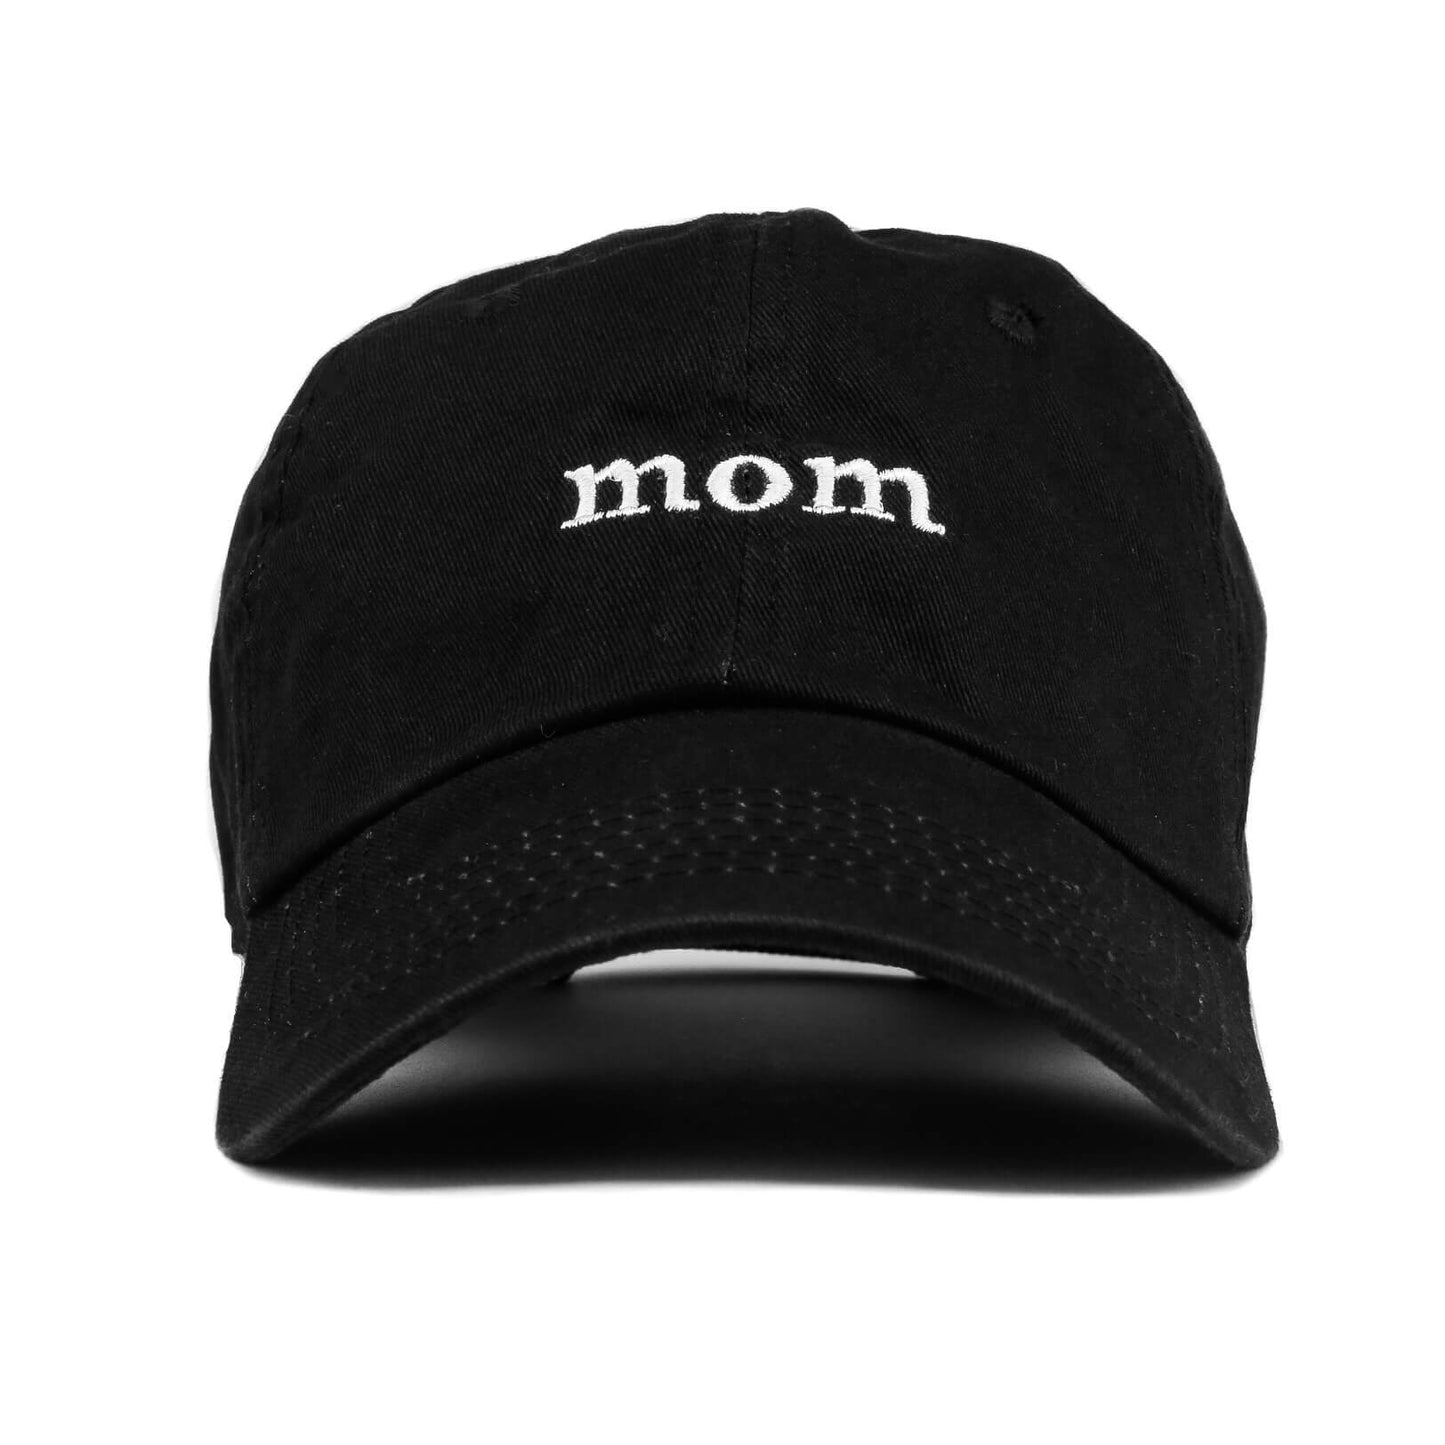 Mom Cap (Black)